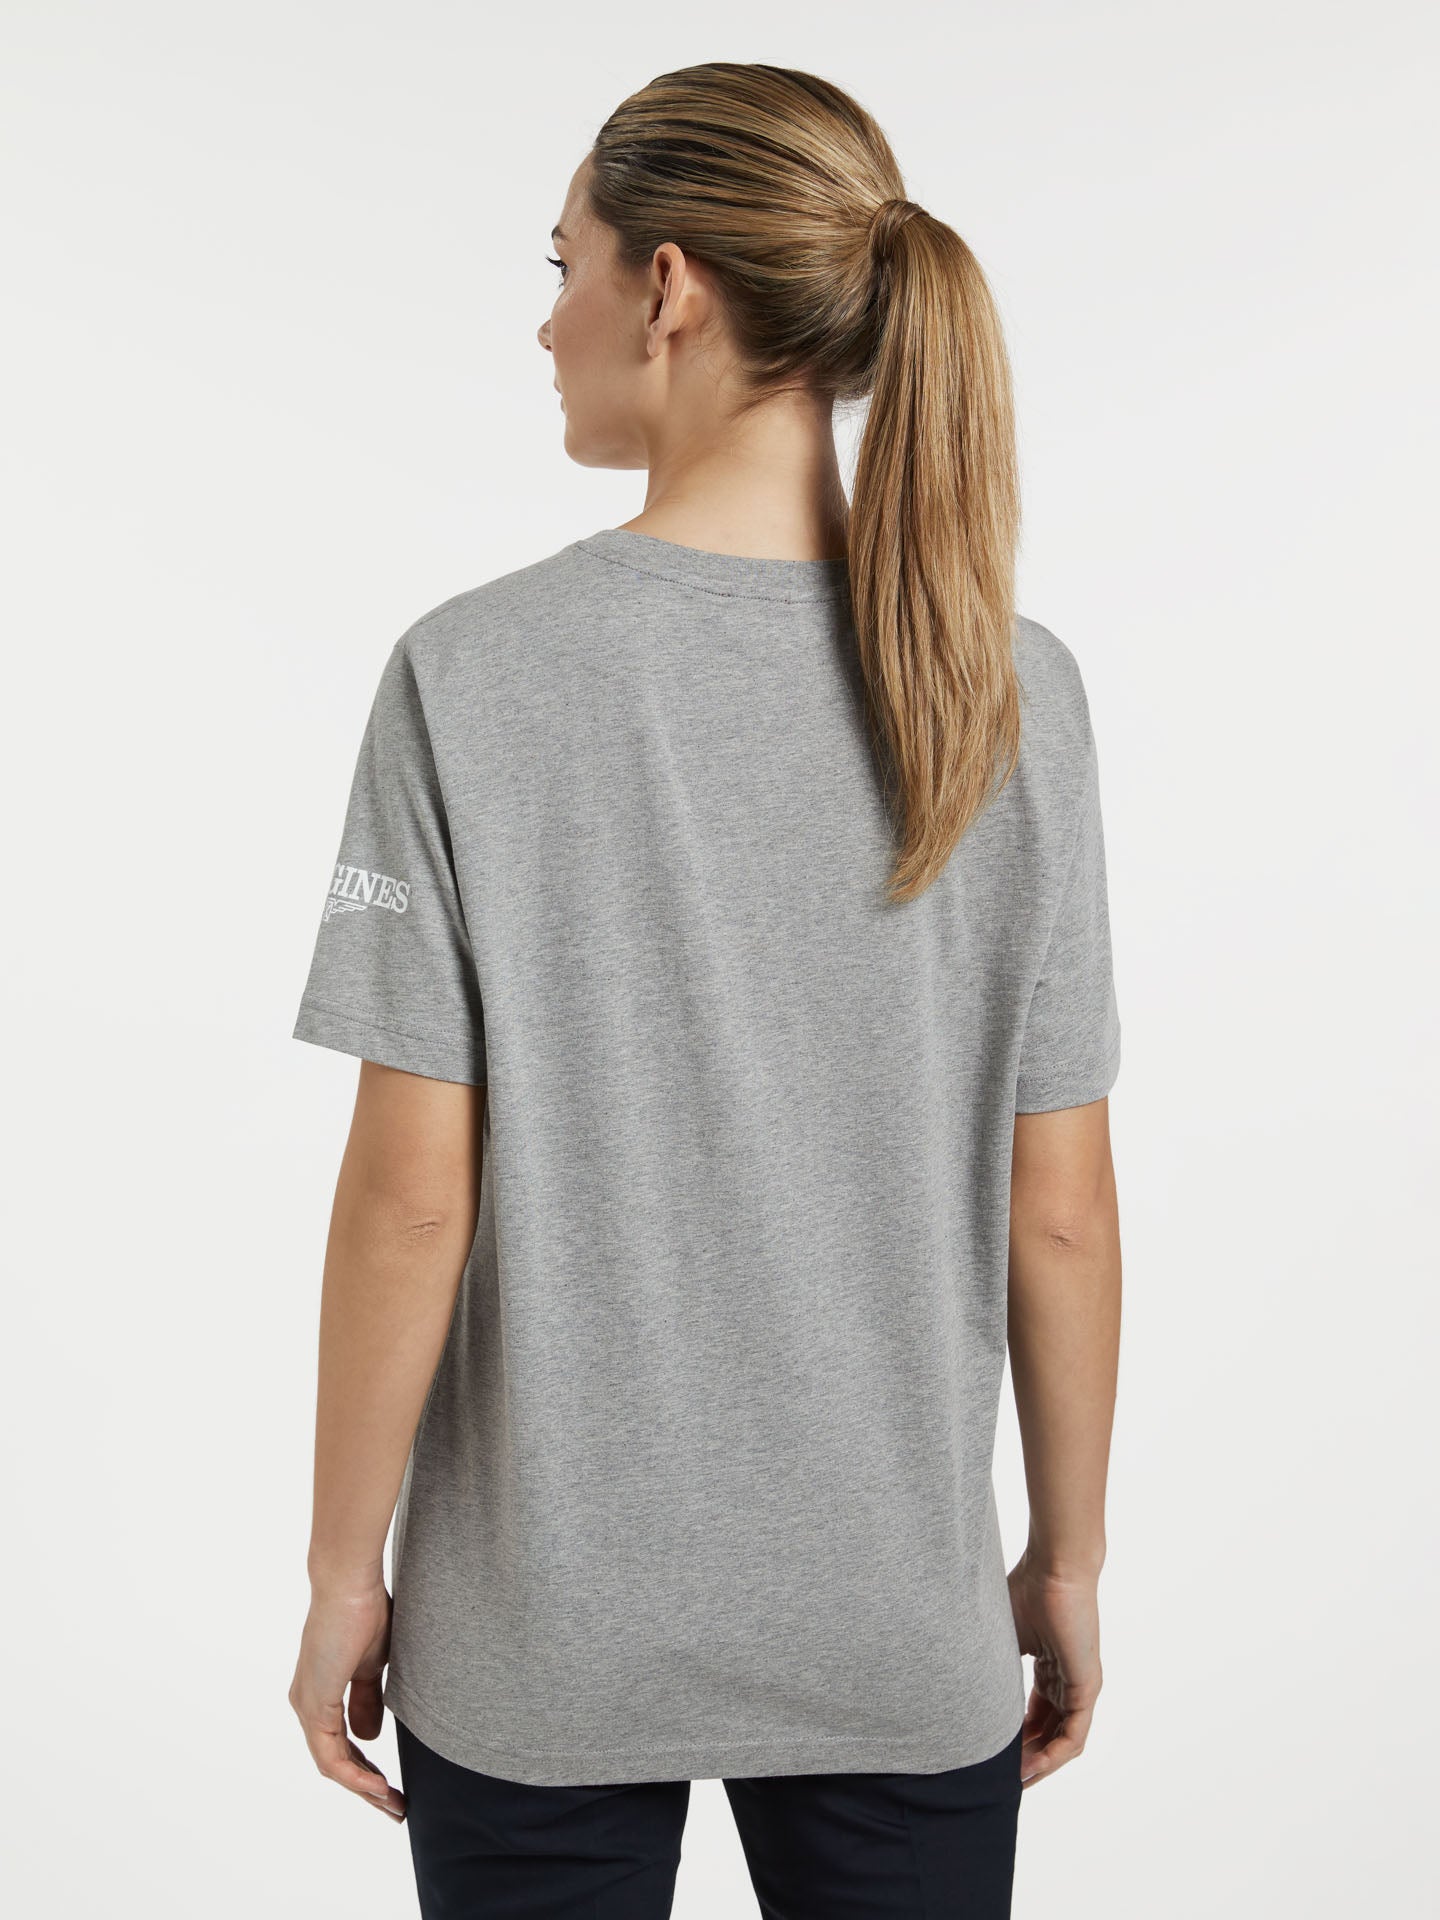 LGCT Essentials #2 Unisex T-Shirt - Grey